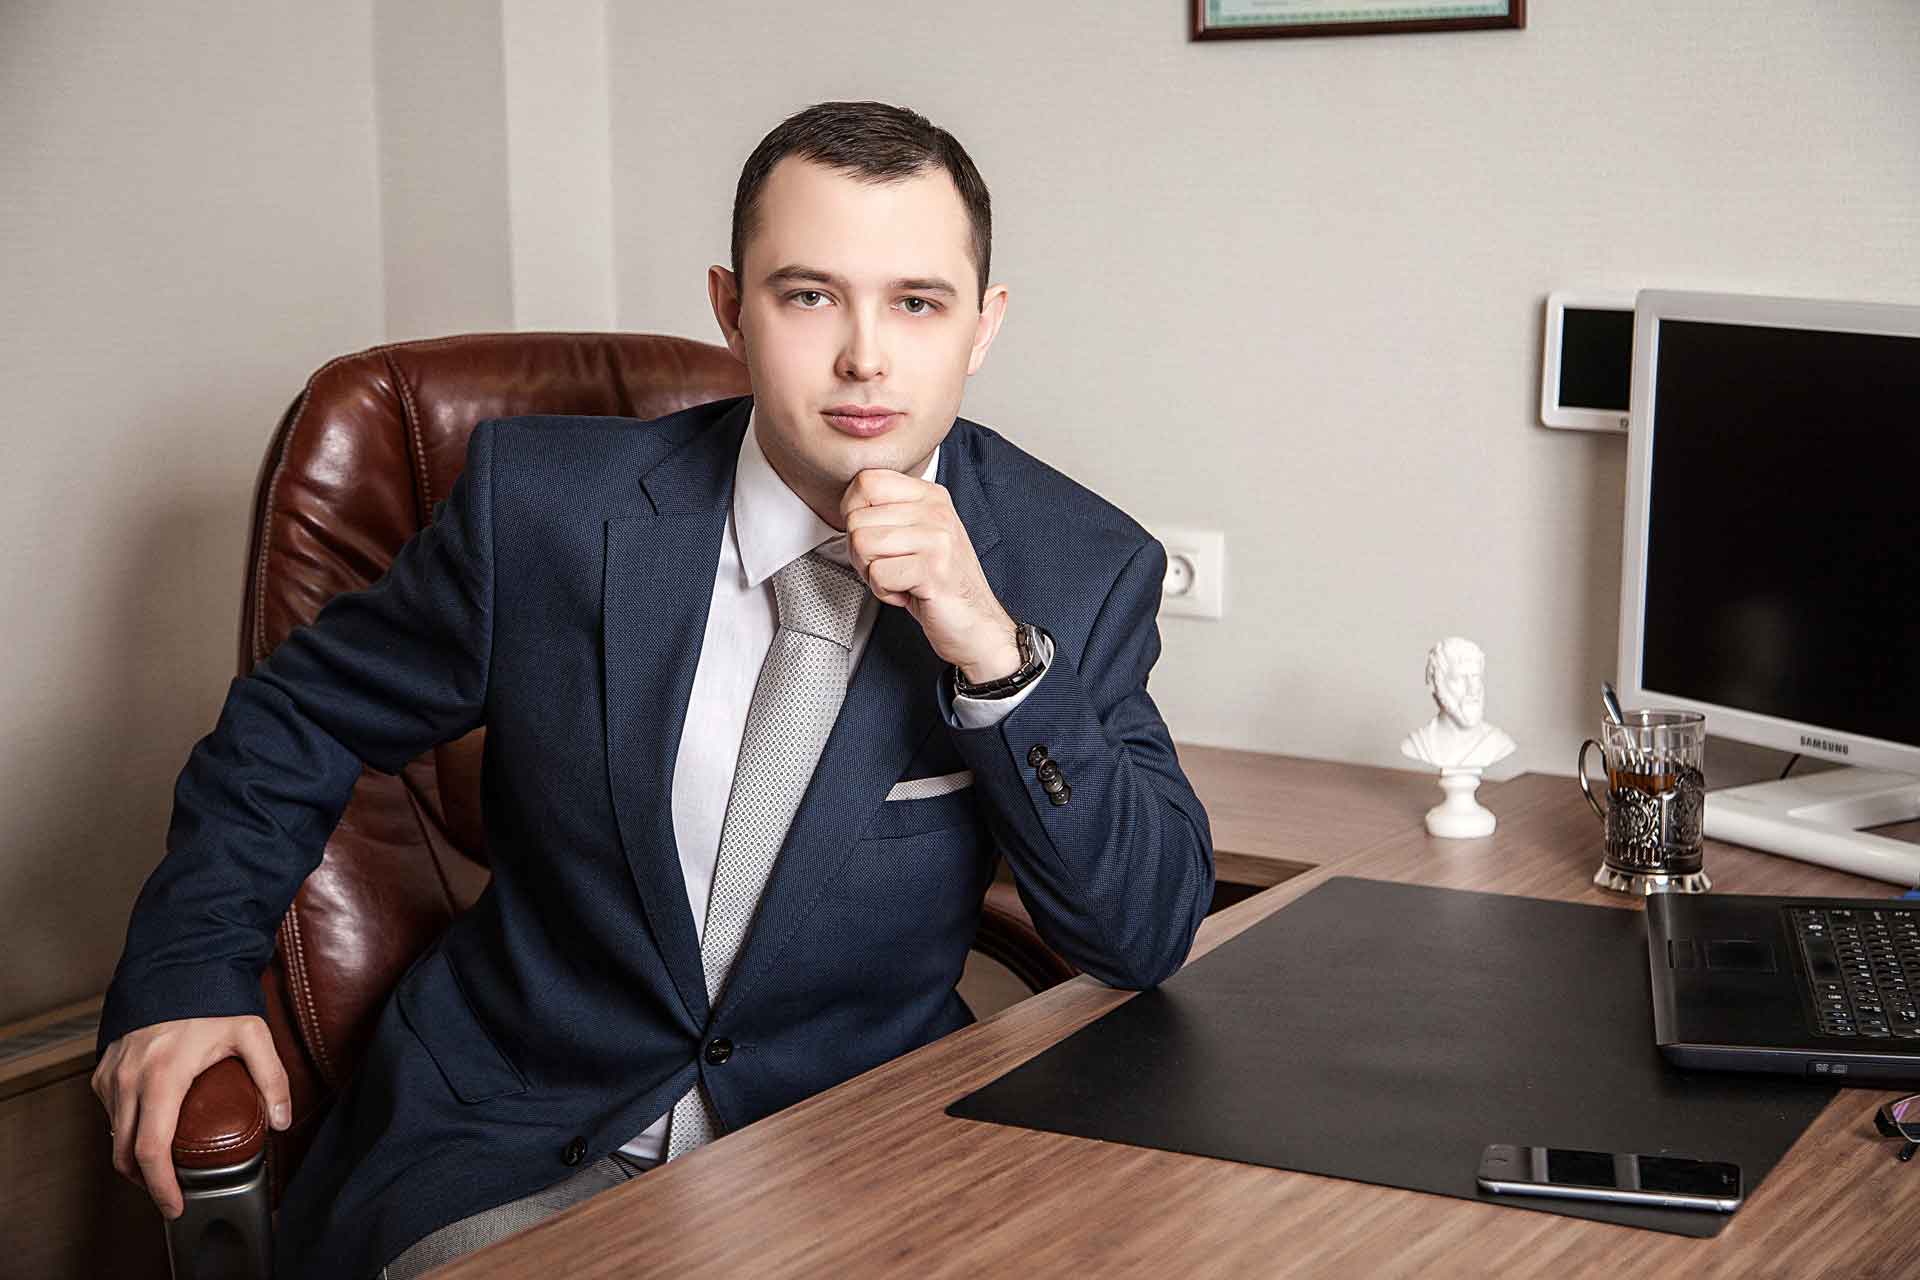 Андрей Саунин, адвокат с более чем 12-ти летним опытом практической работы